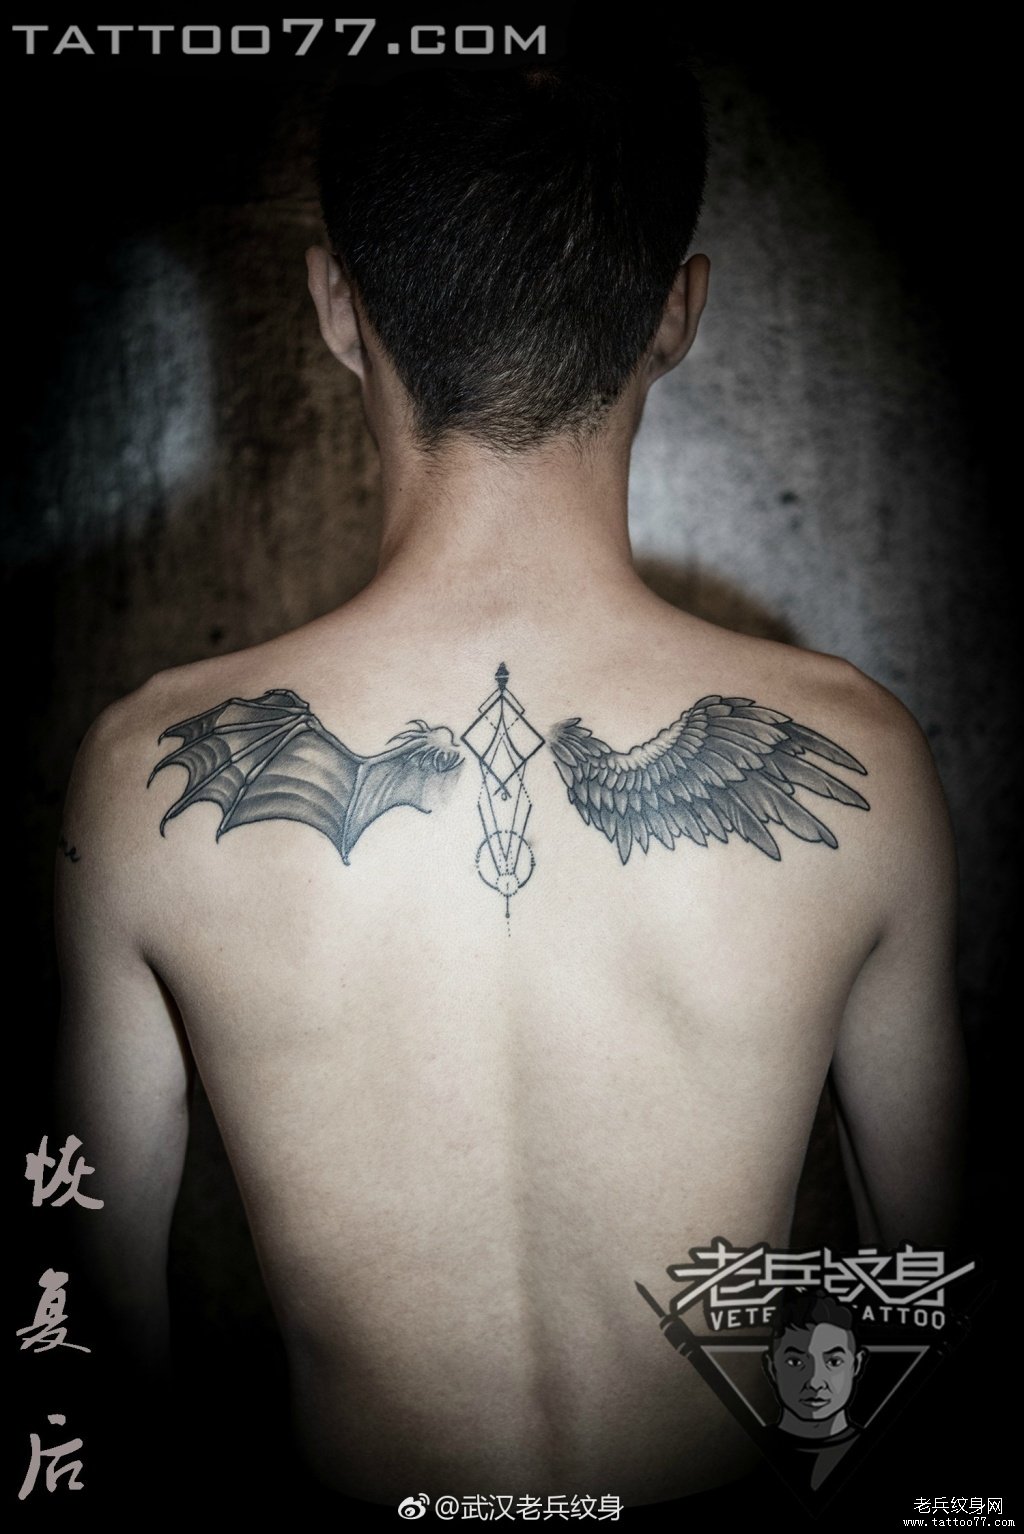 后背天使恶魔翅膀纹身图案作品恢复后